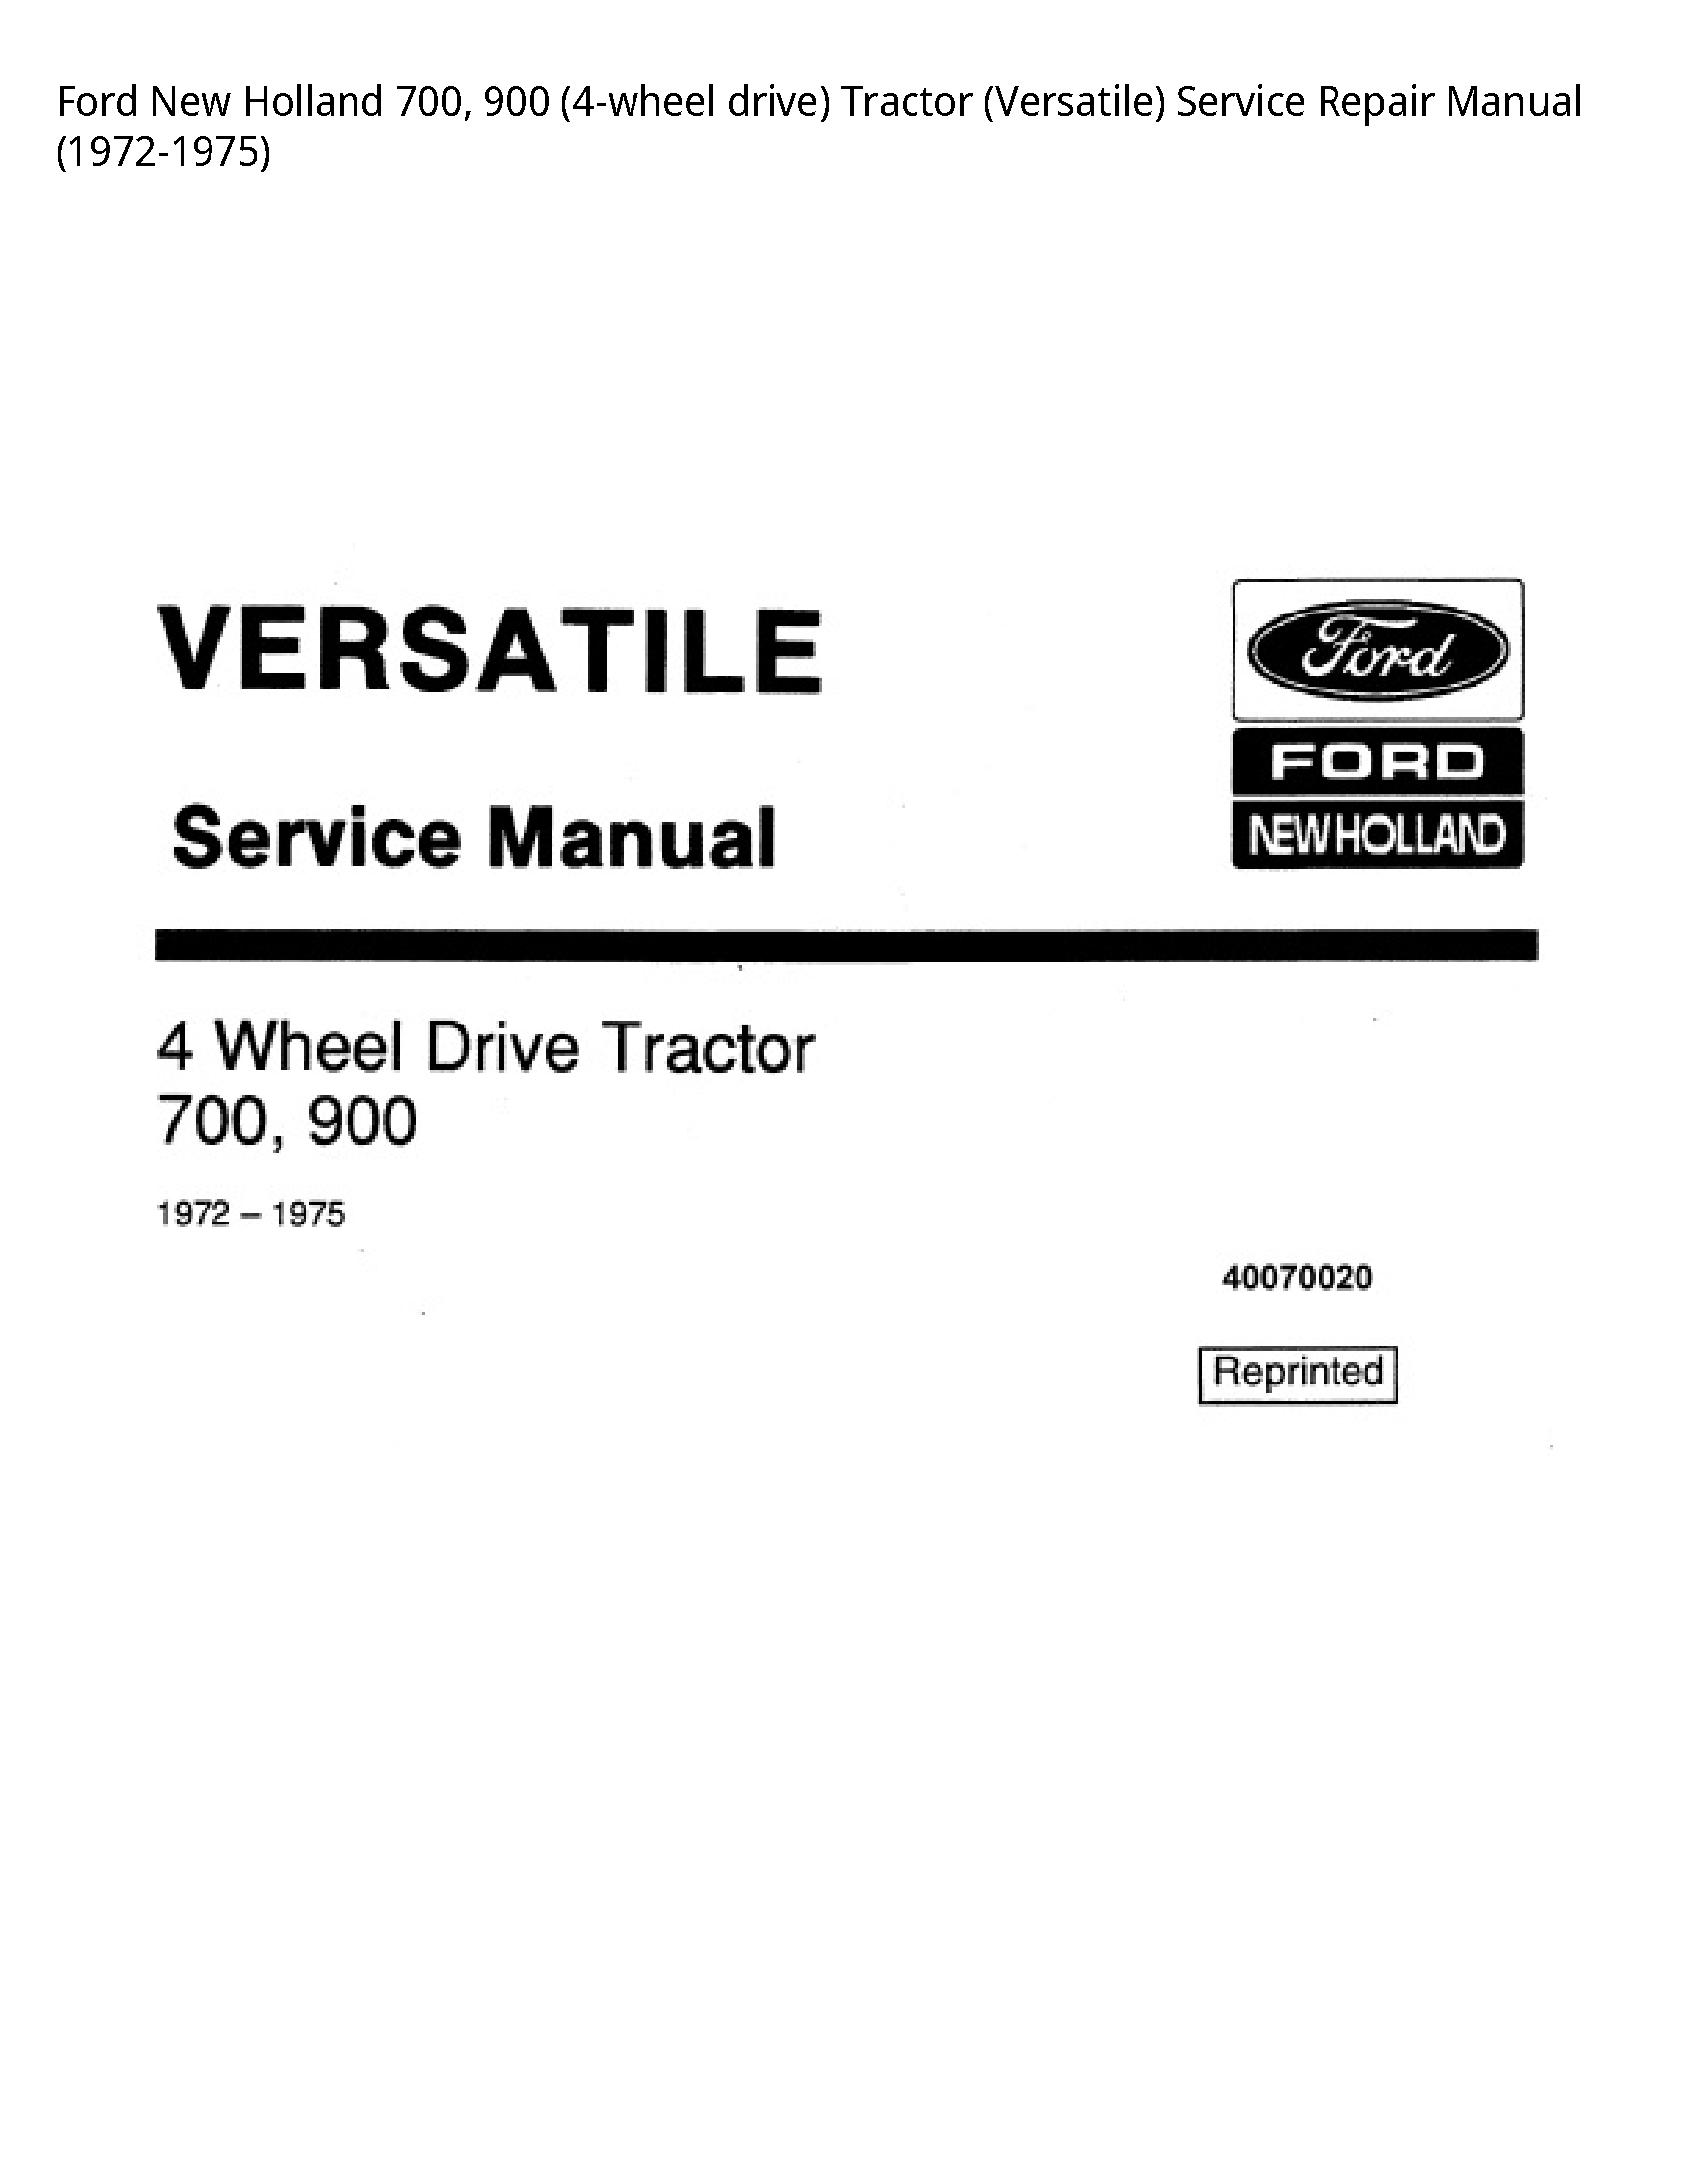  700 drive) Tractor (Versatile) manual